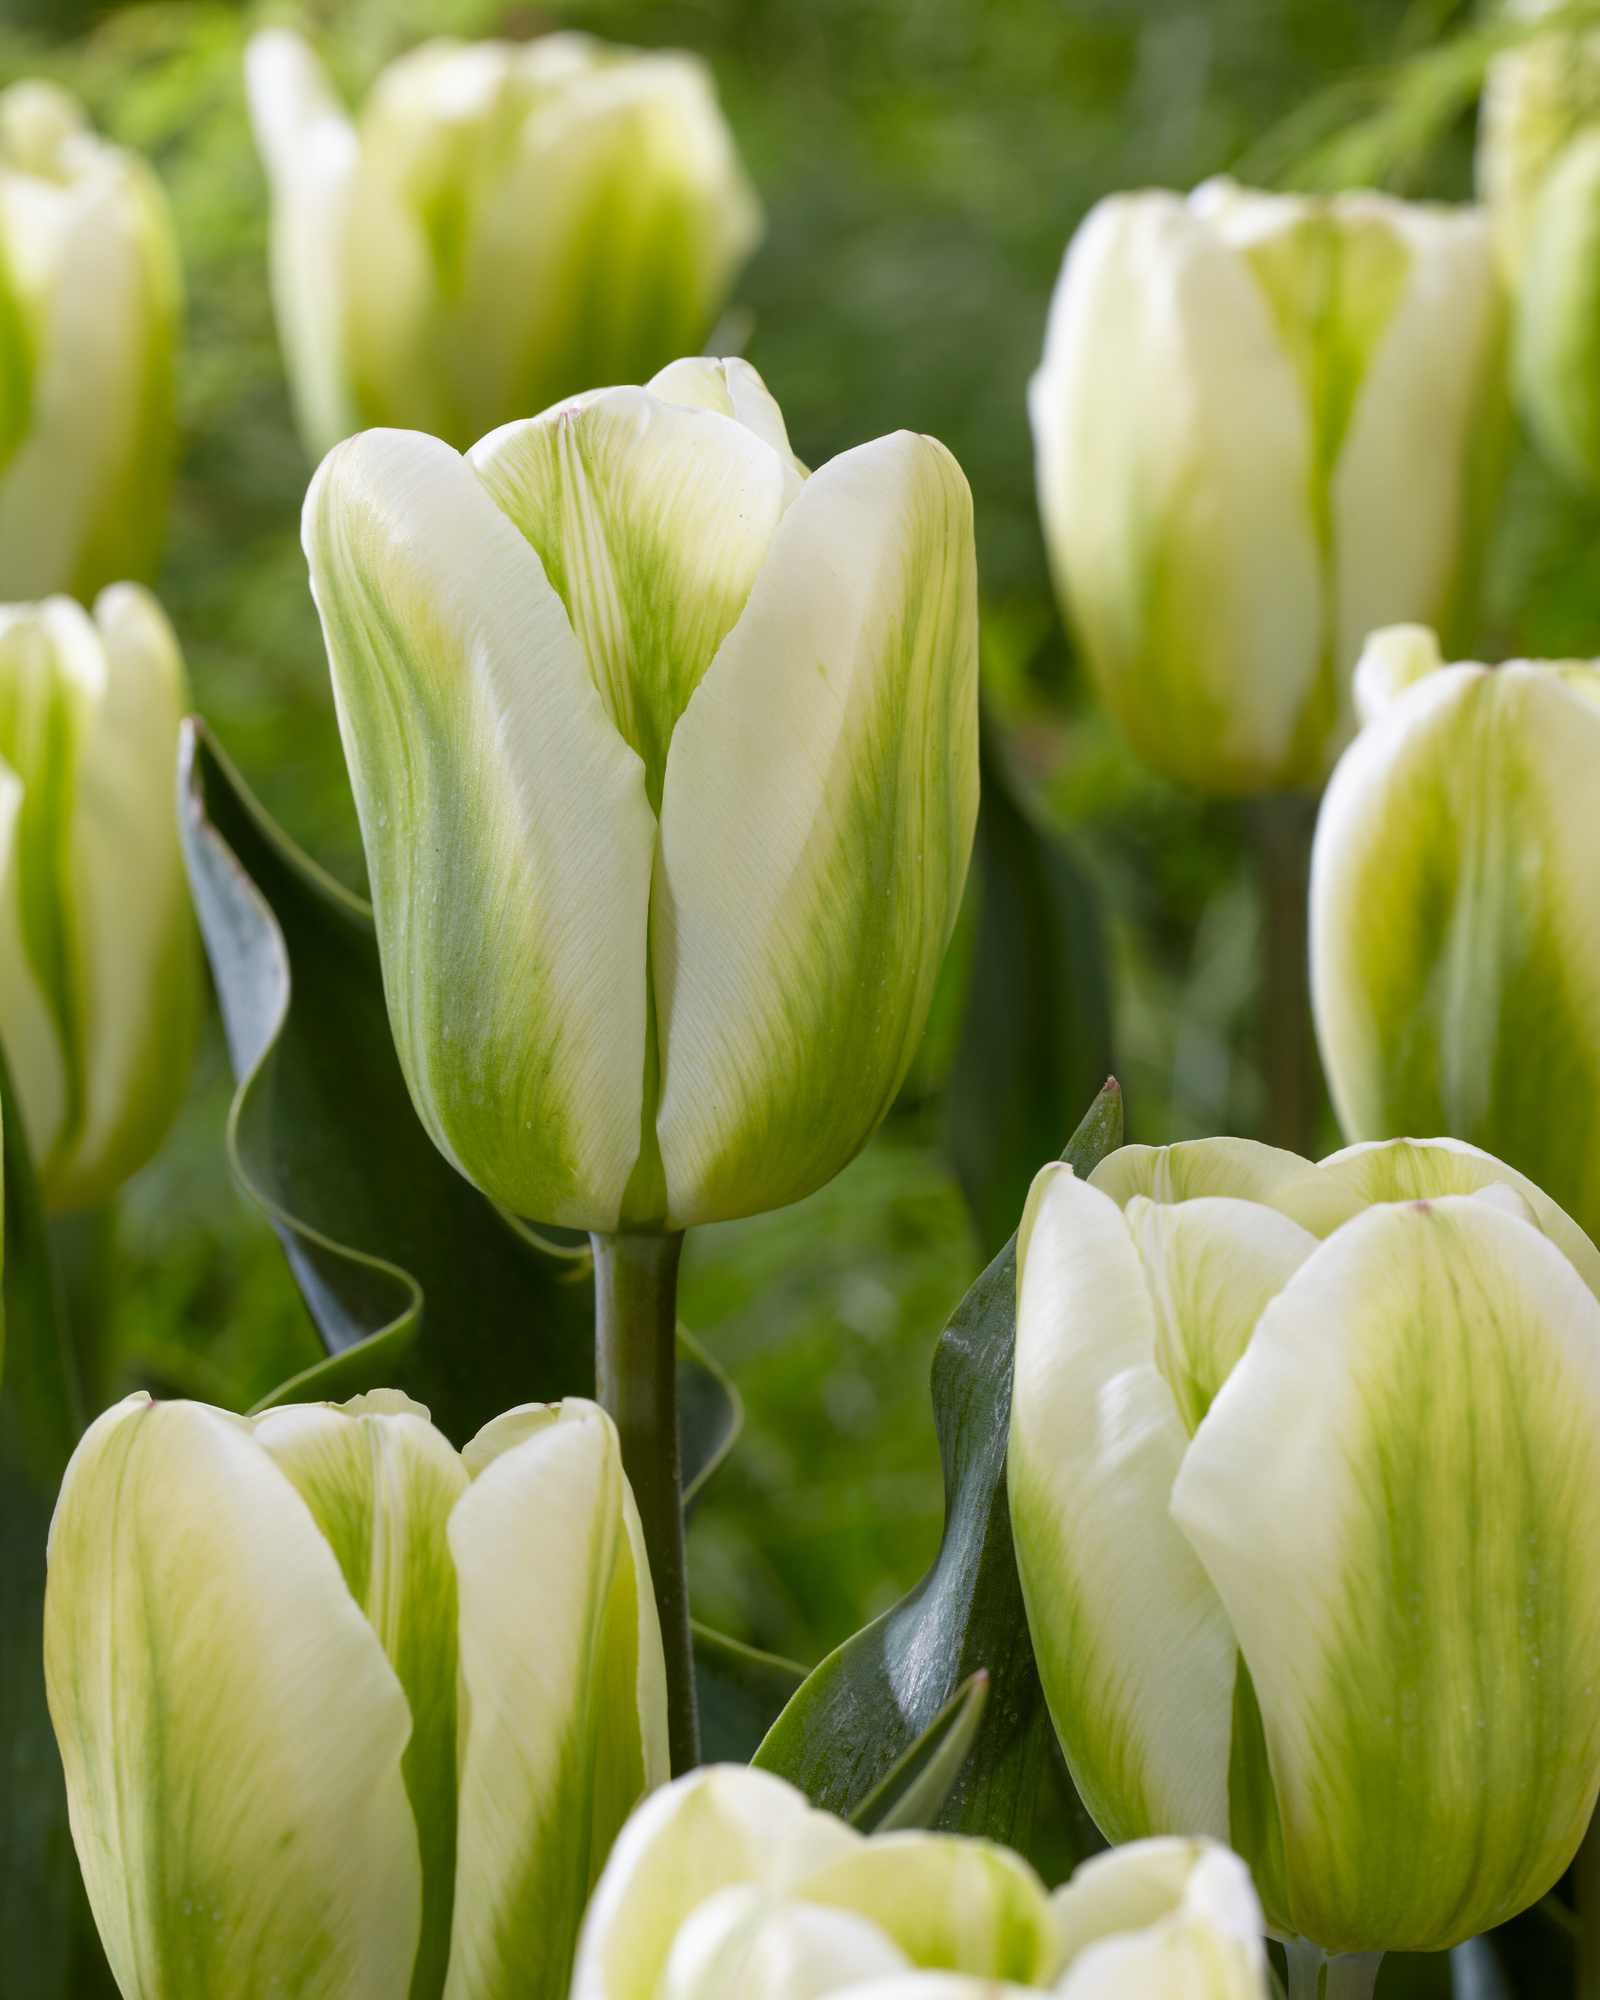 Viridiflora-Tulpen Green Spirit